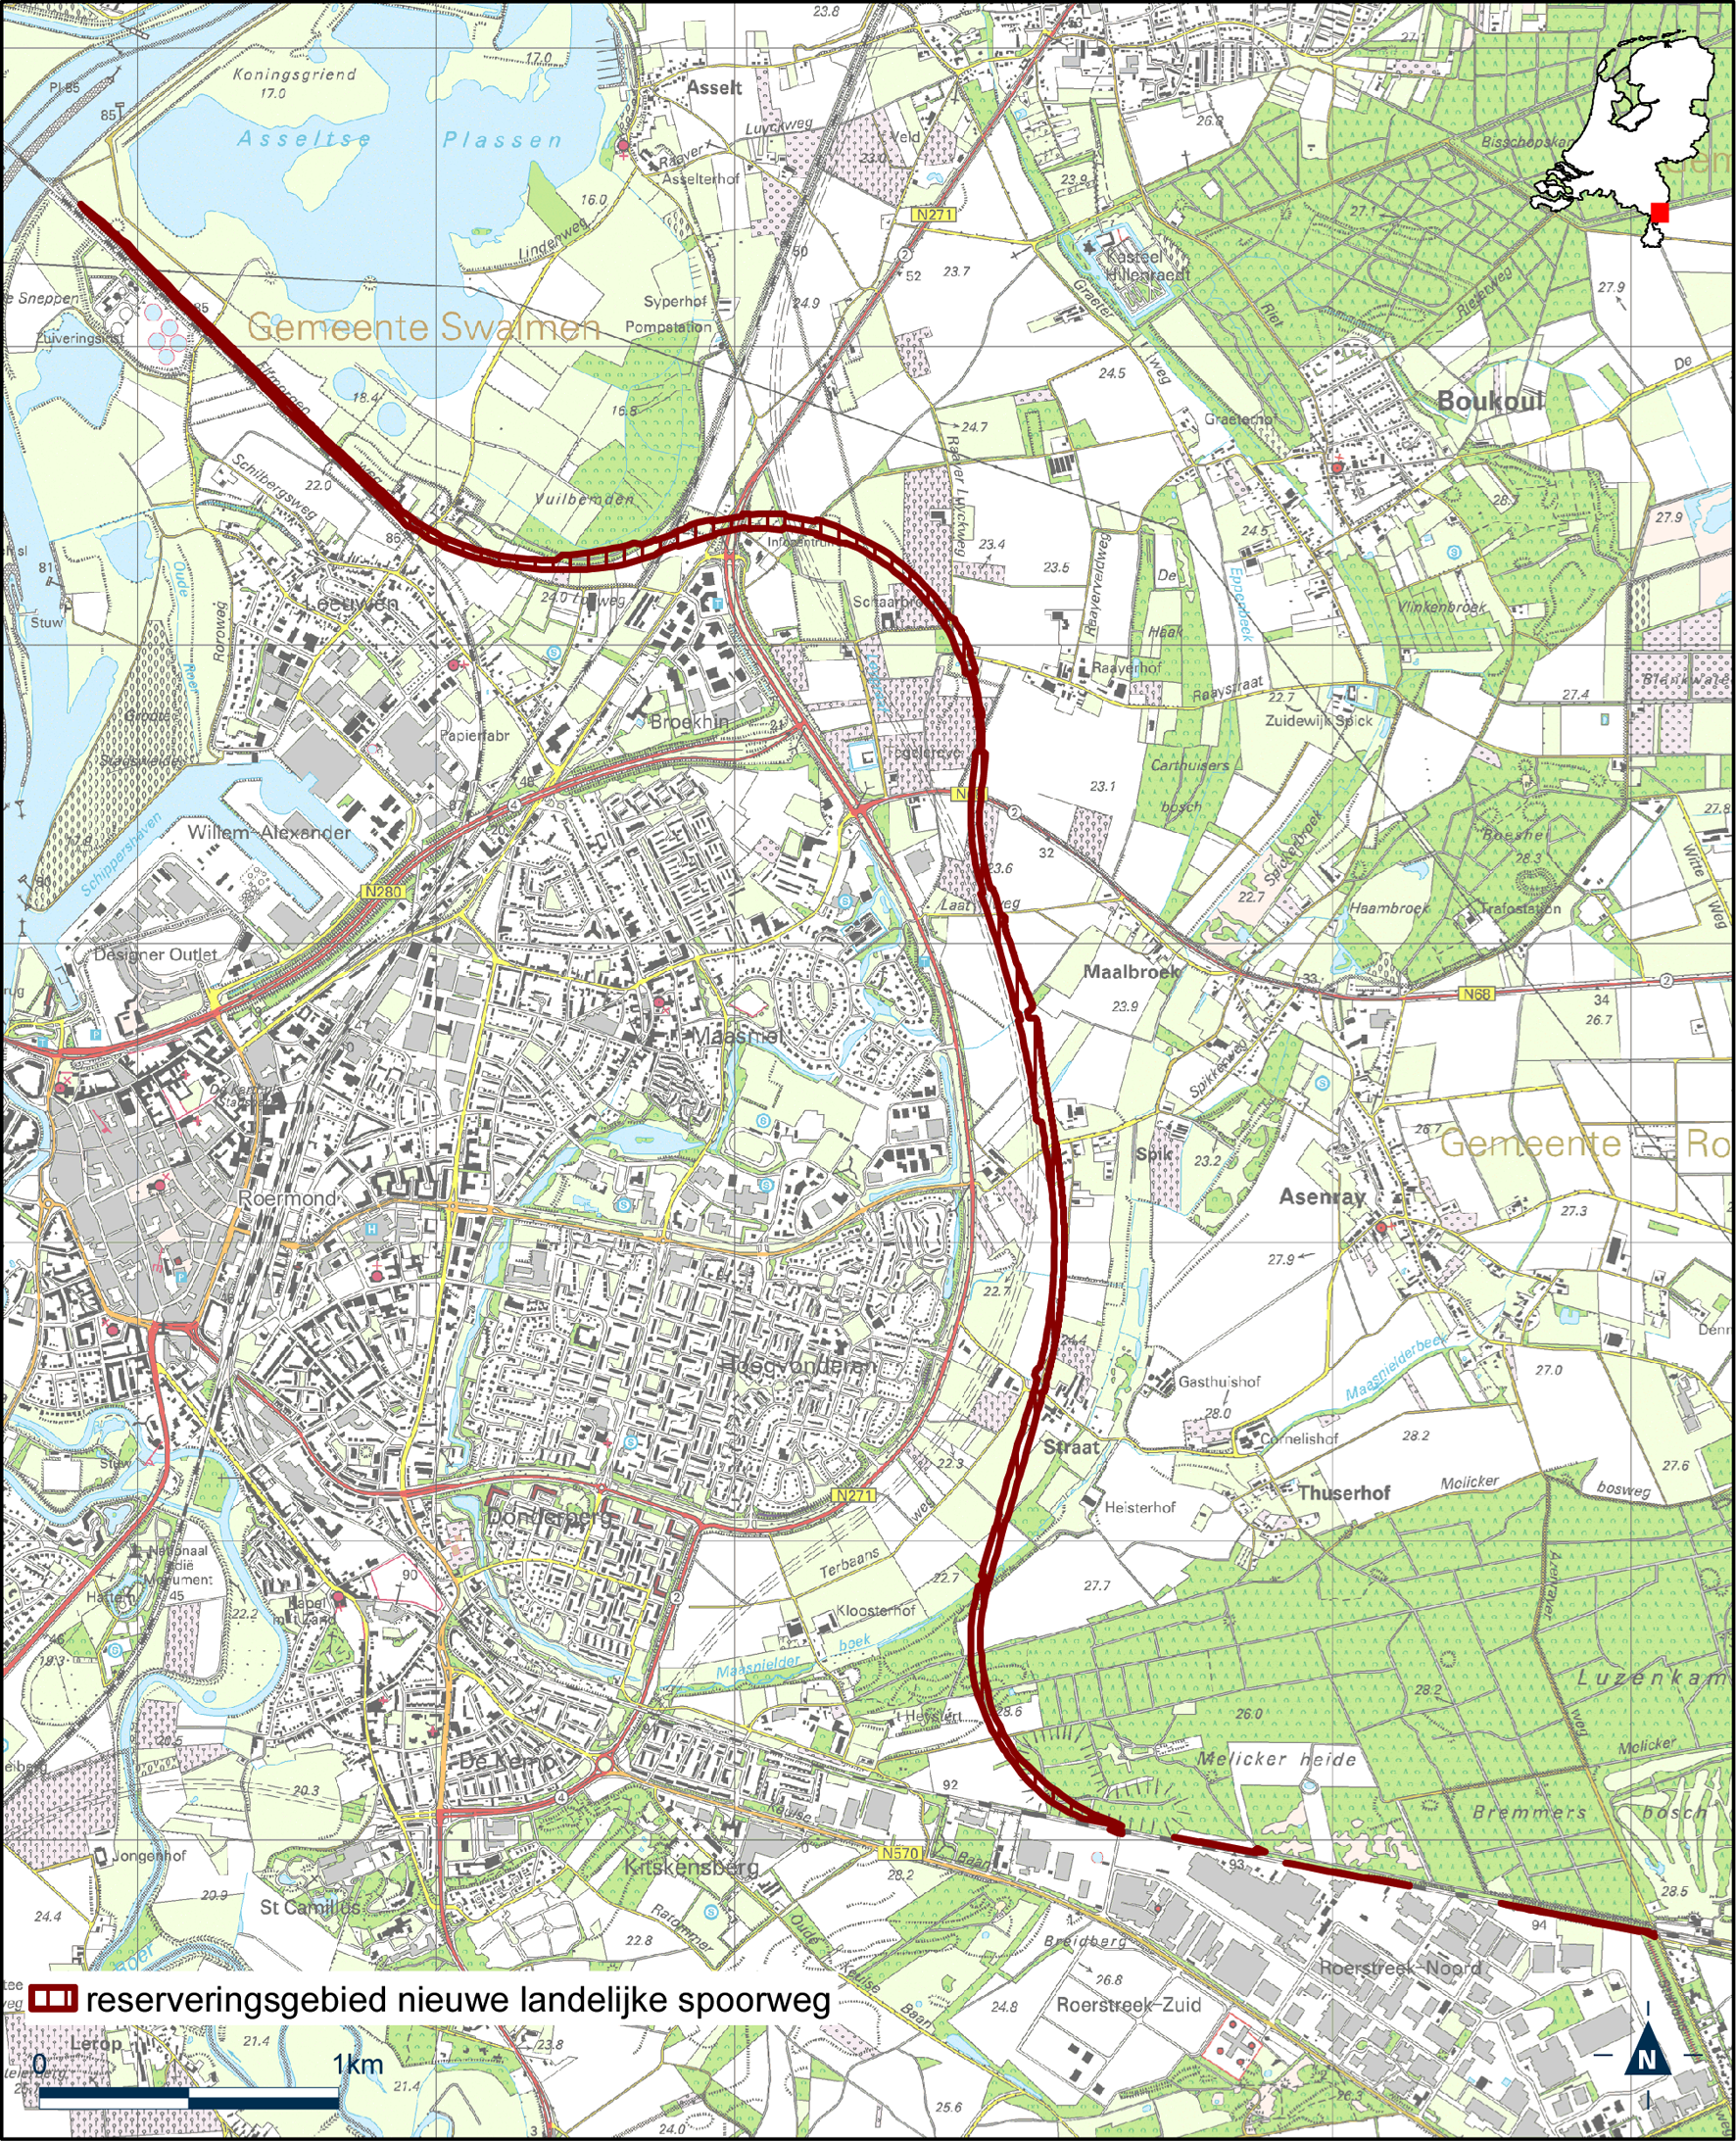 Kaart reserveringsgebied nieuwe landelijke spoorweg IJzeren rijn